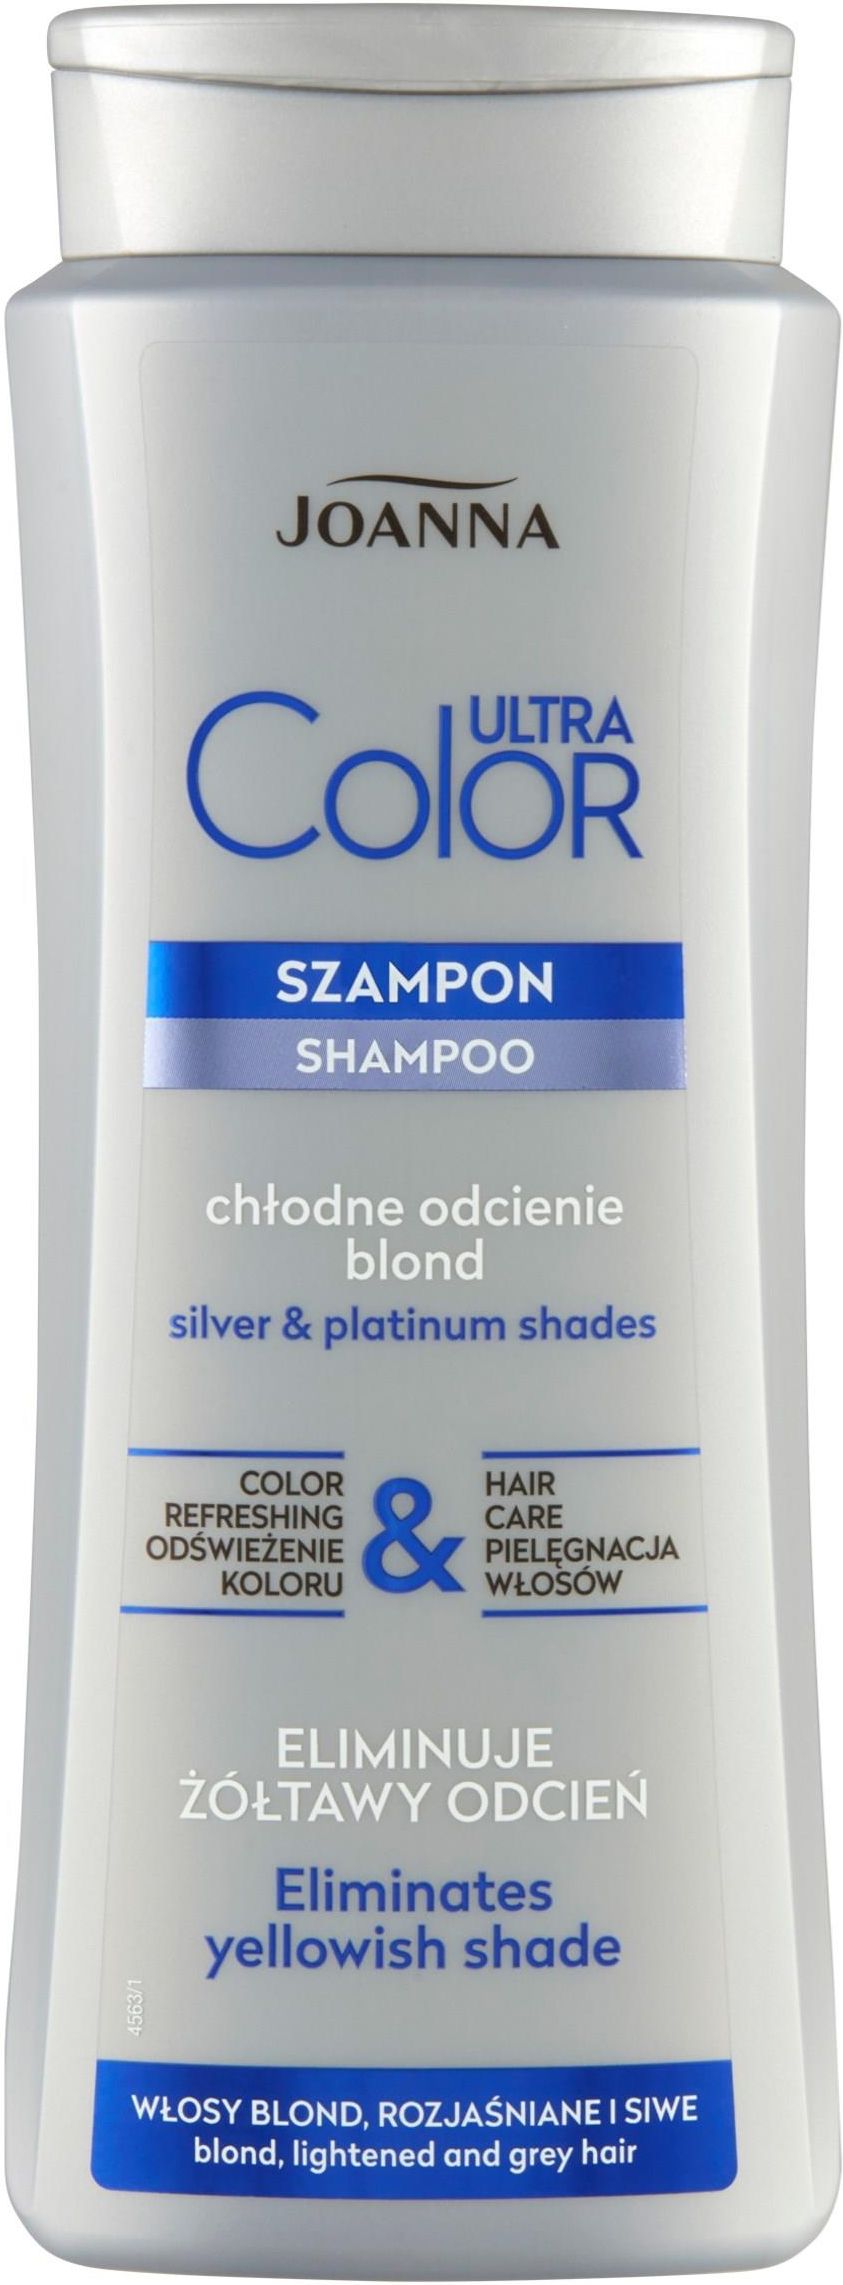 joanna ultra color system szampon nadający włosom platynowy odcień